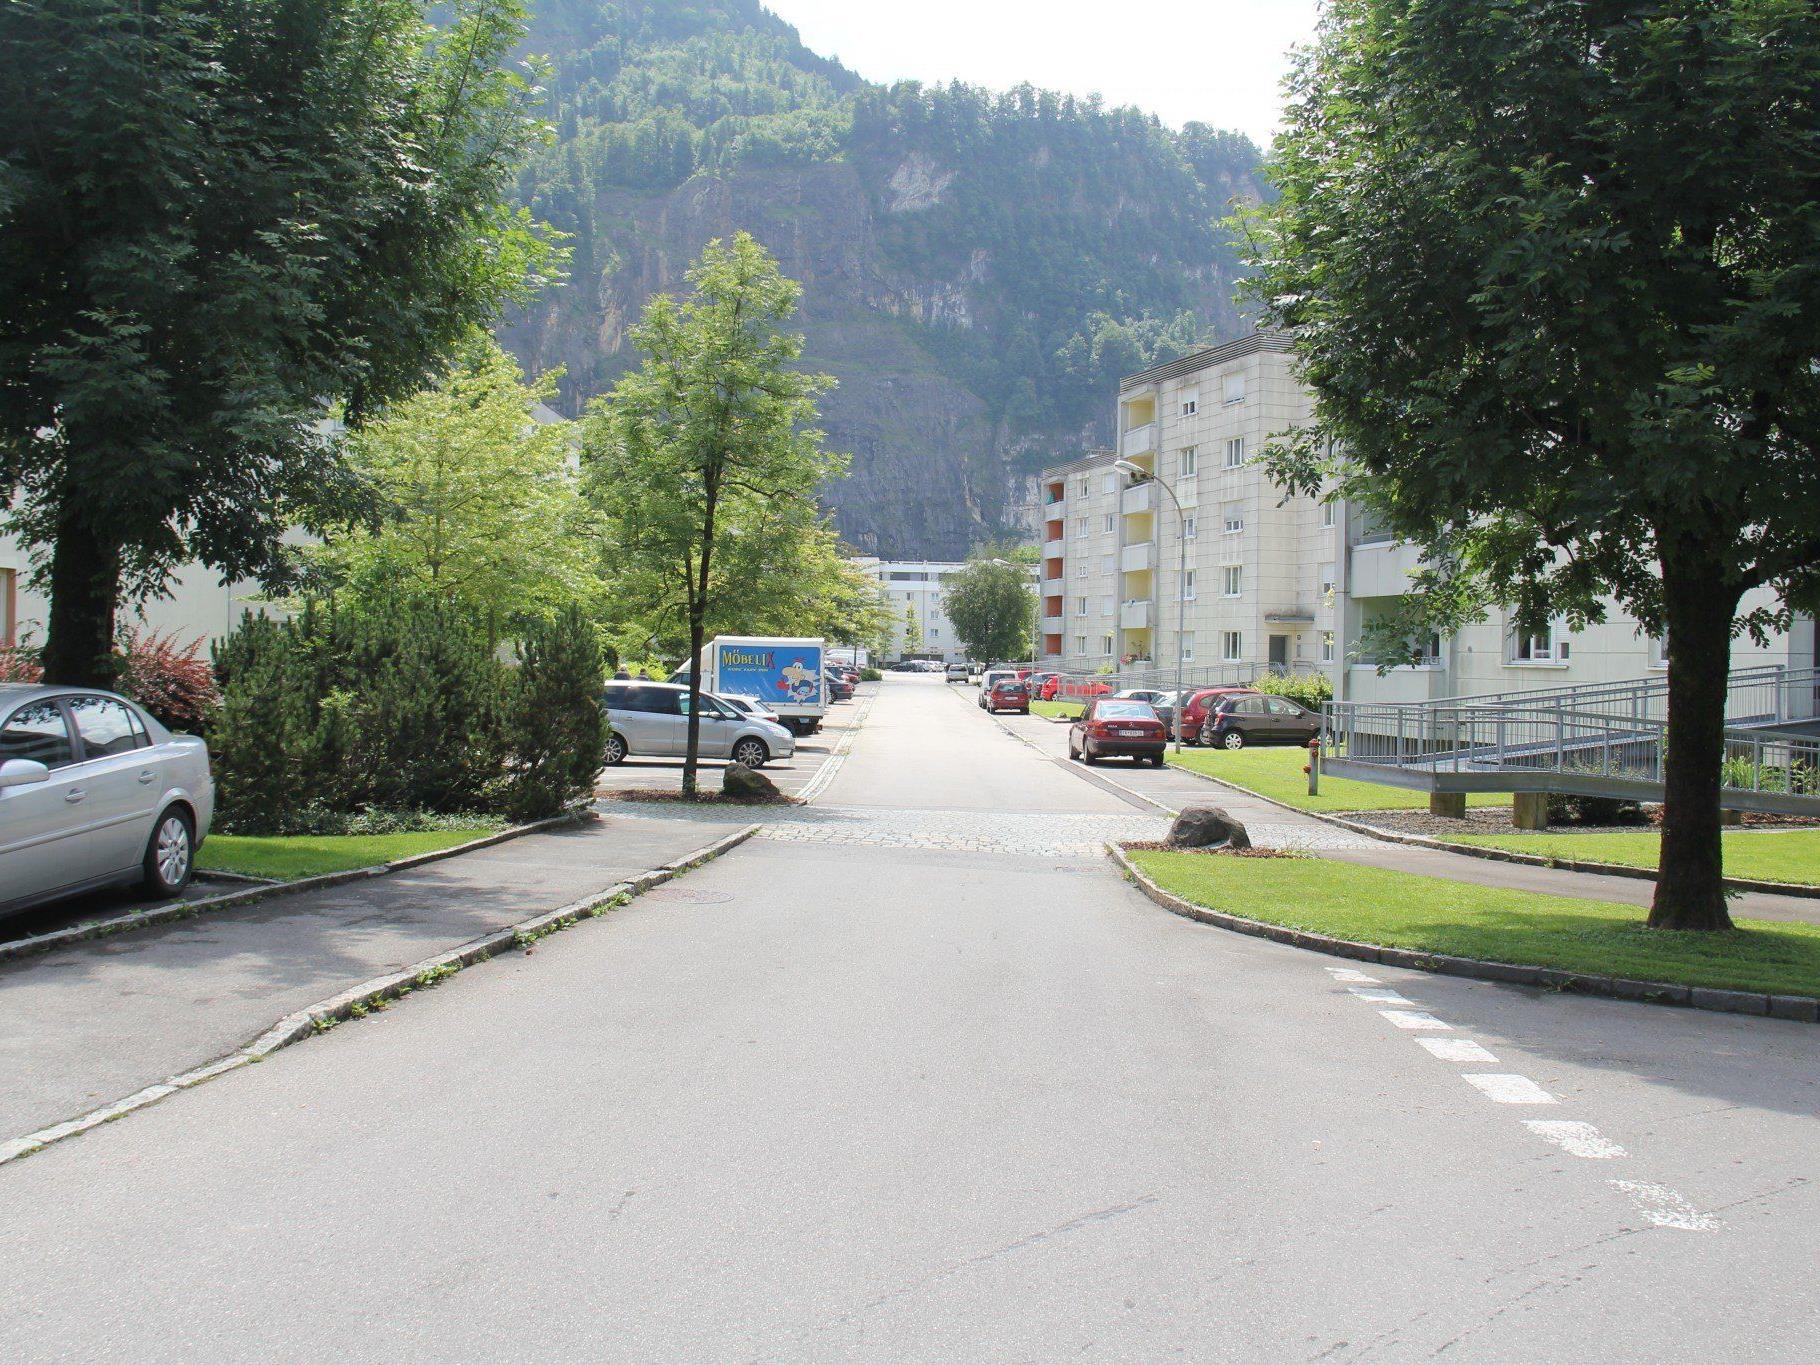 VOL.AT stellt die Straßen von Vorarlberg in einer großen Serie vor.